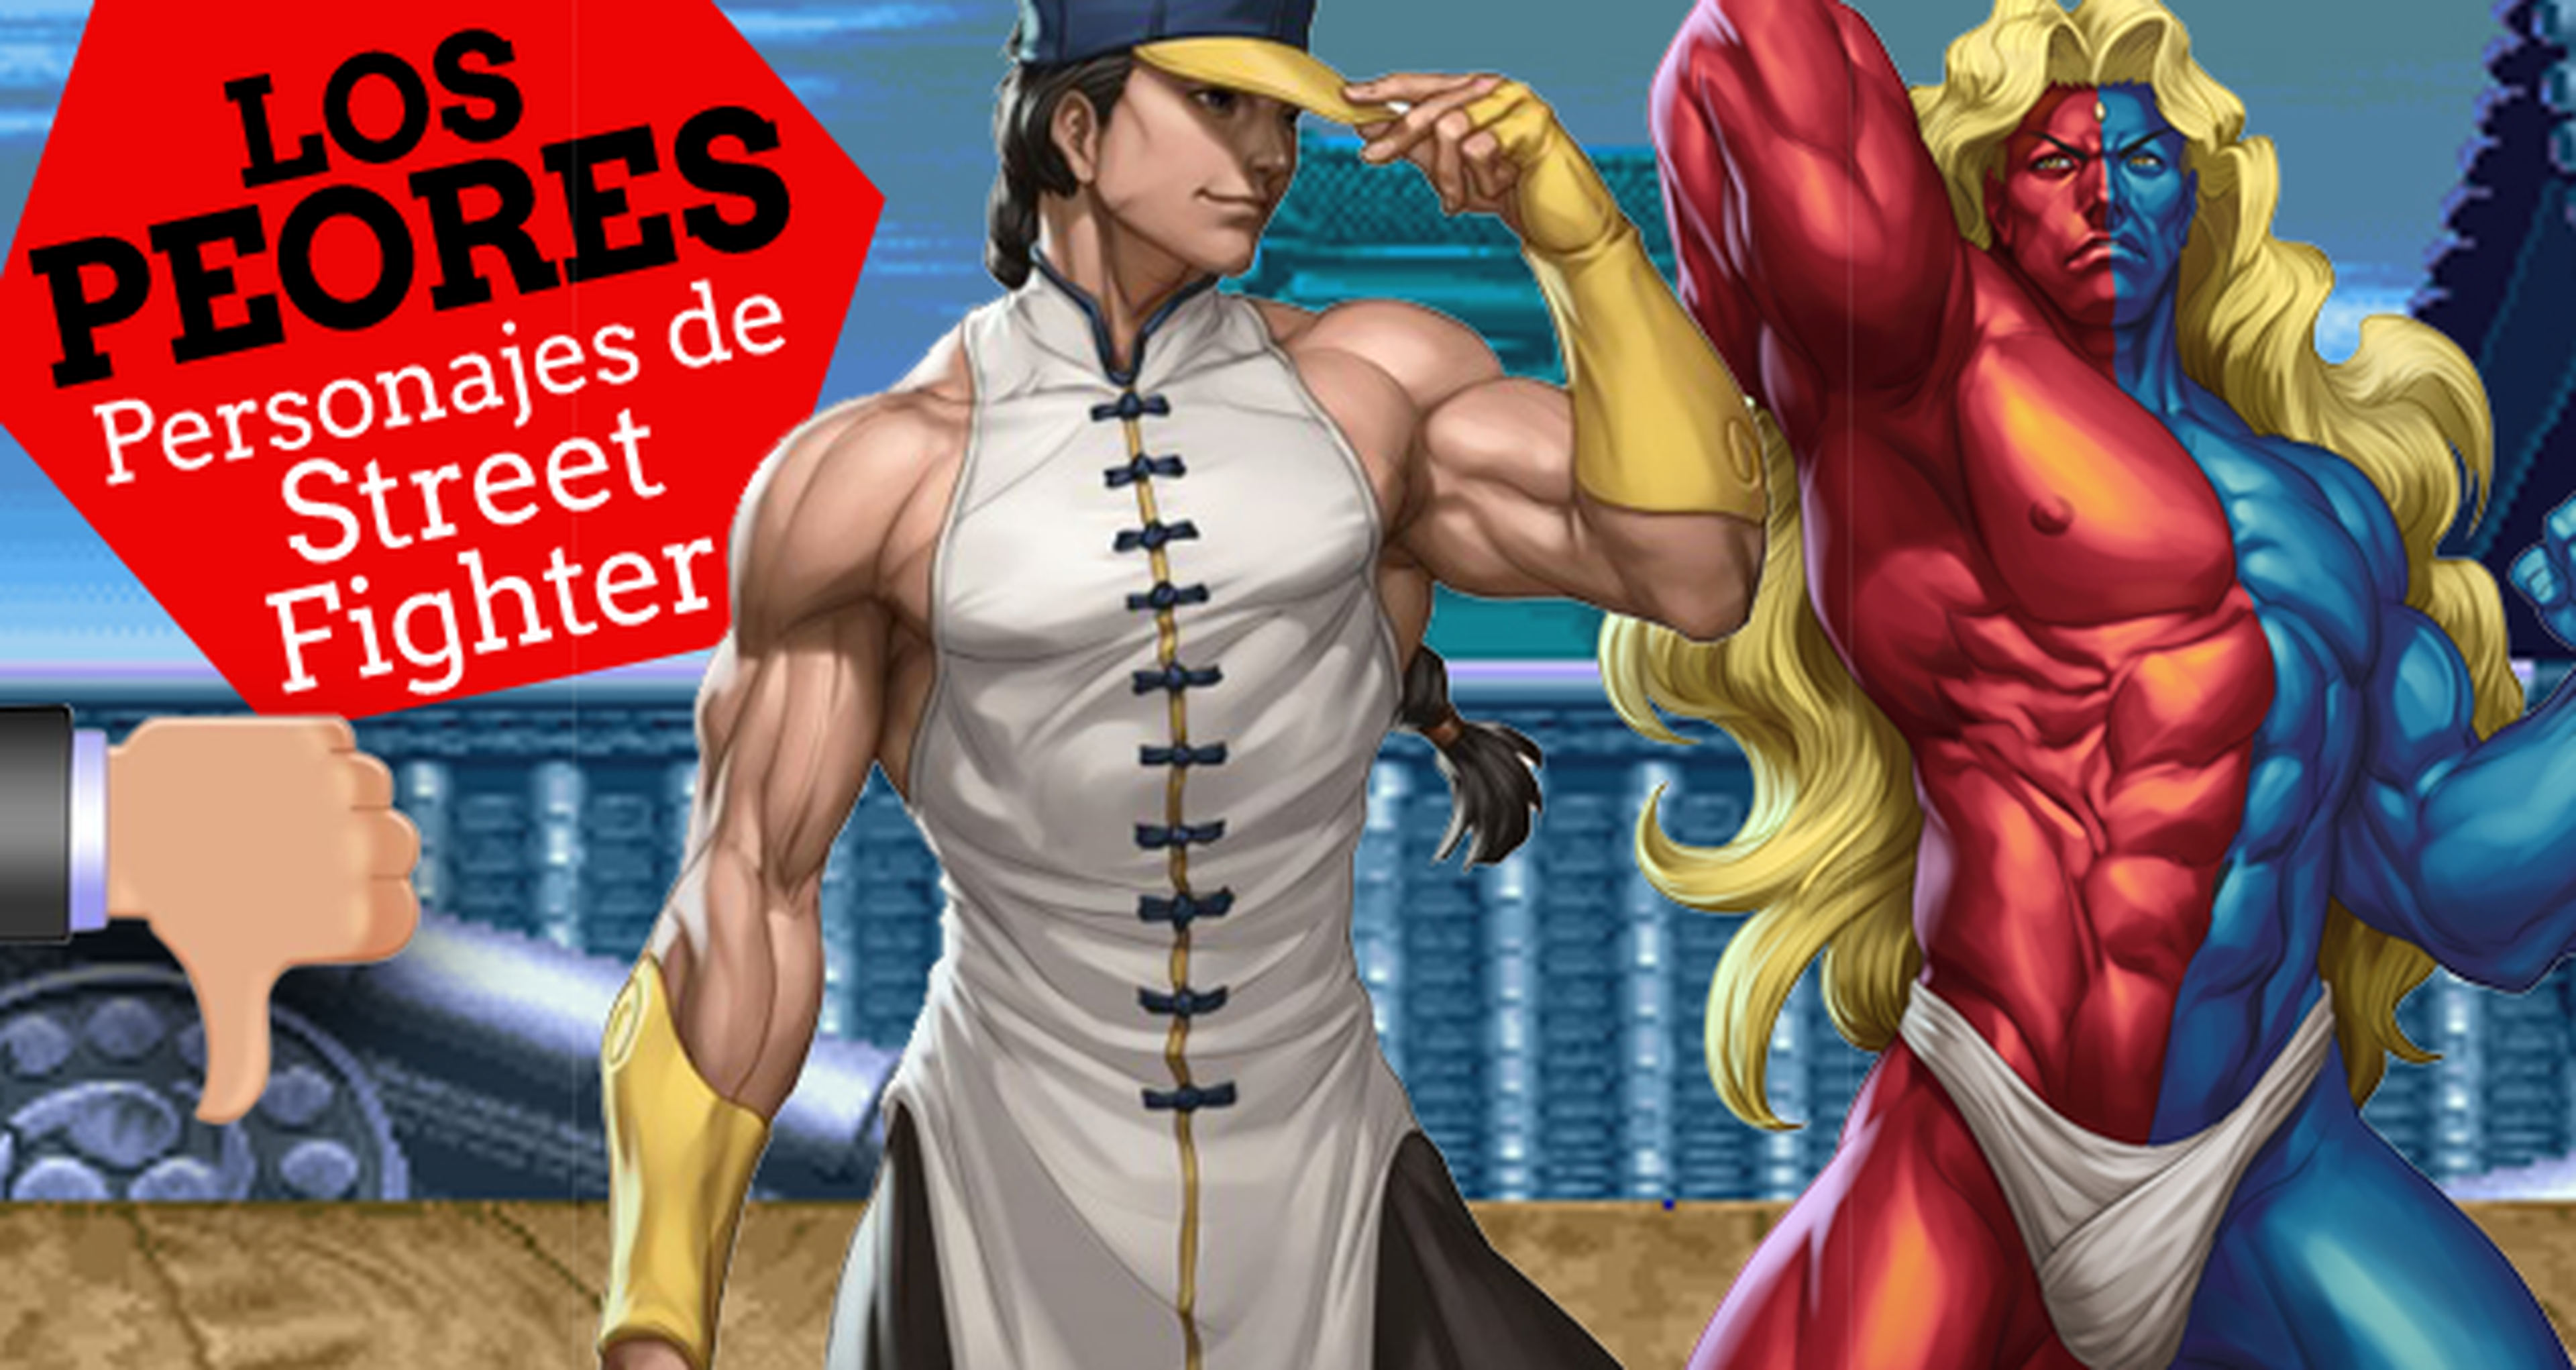 Los 10 peores personajes de Street Fighter